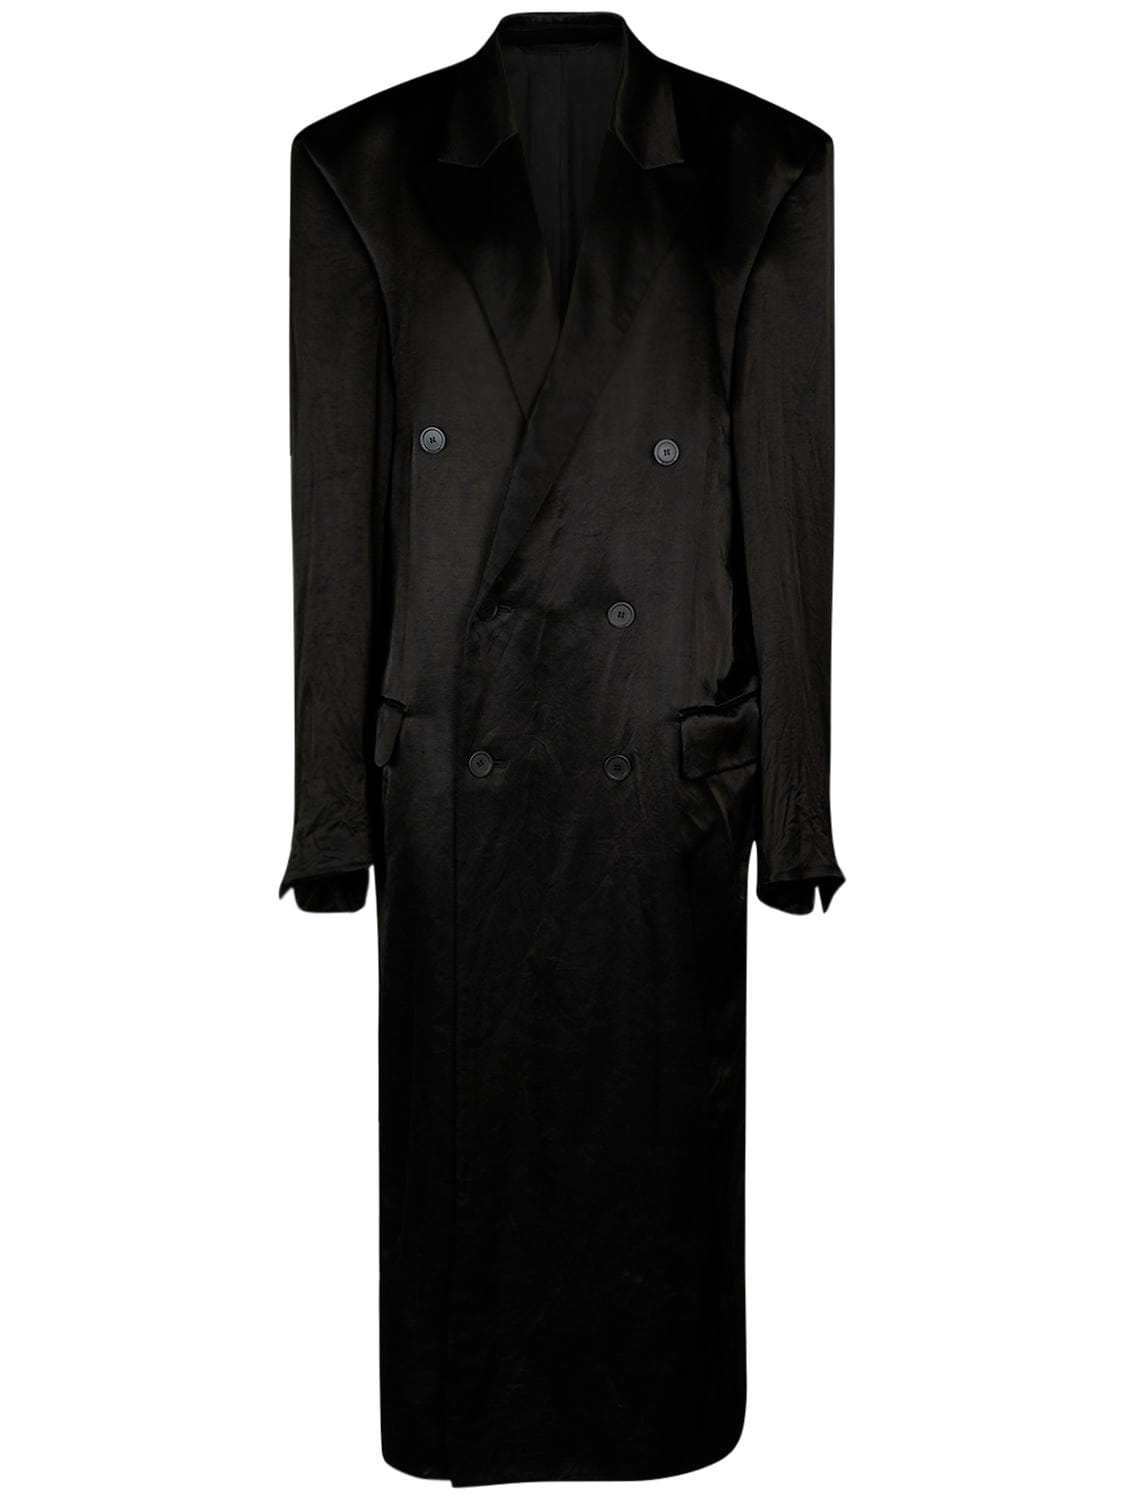 Balenciaga New Steroid粘胶纤维混纺大衣 In Black